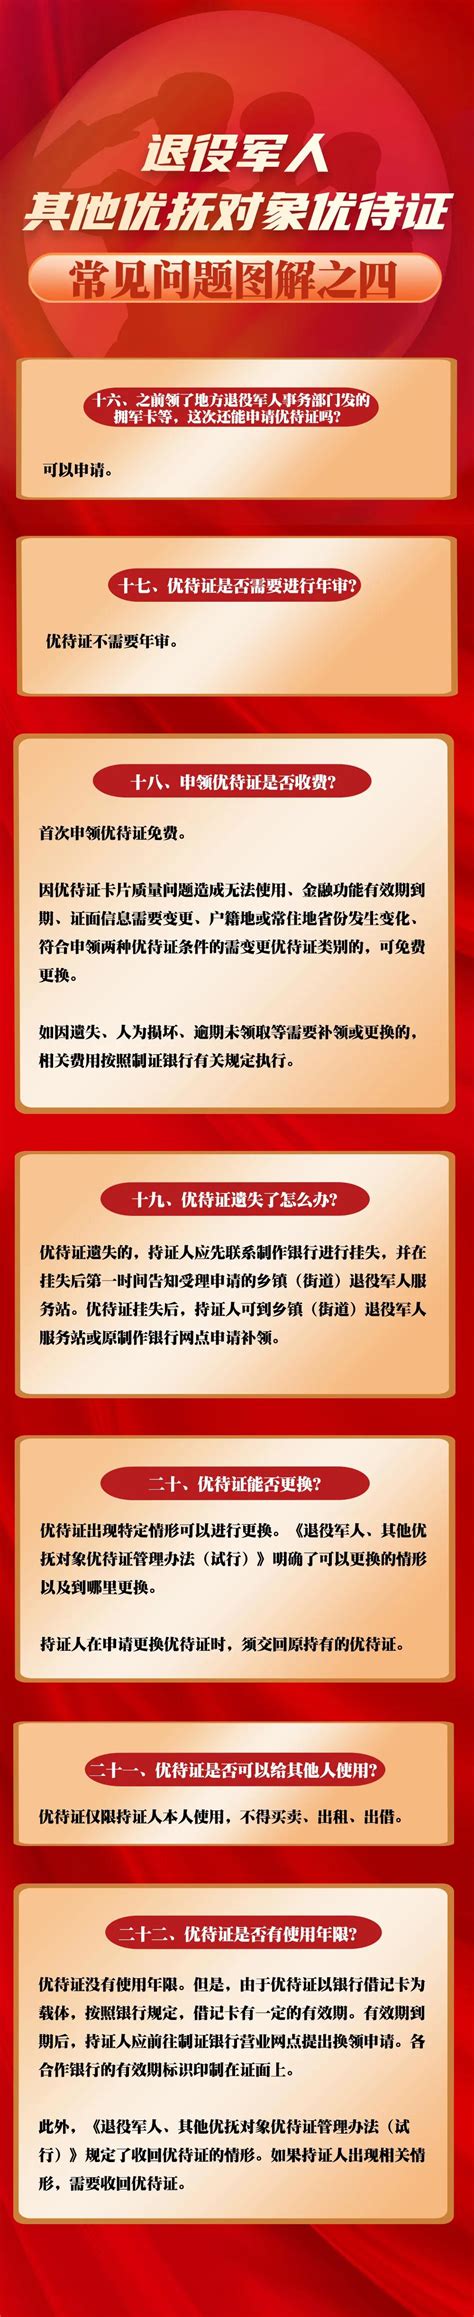 退役军人、其他优抚对象优待证常见问题（图解一、二、三、四）-新闻发布-中华人民共和国退役军人事务部